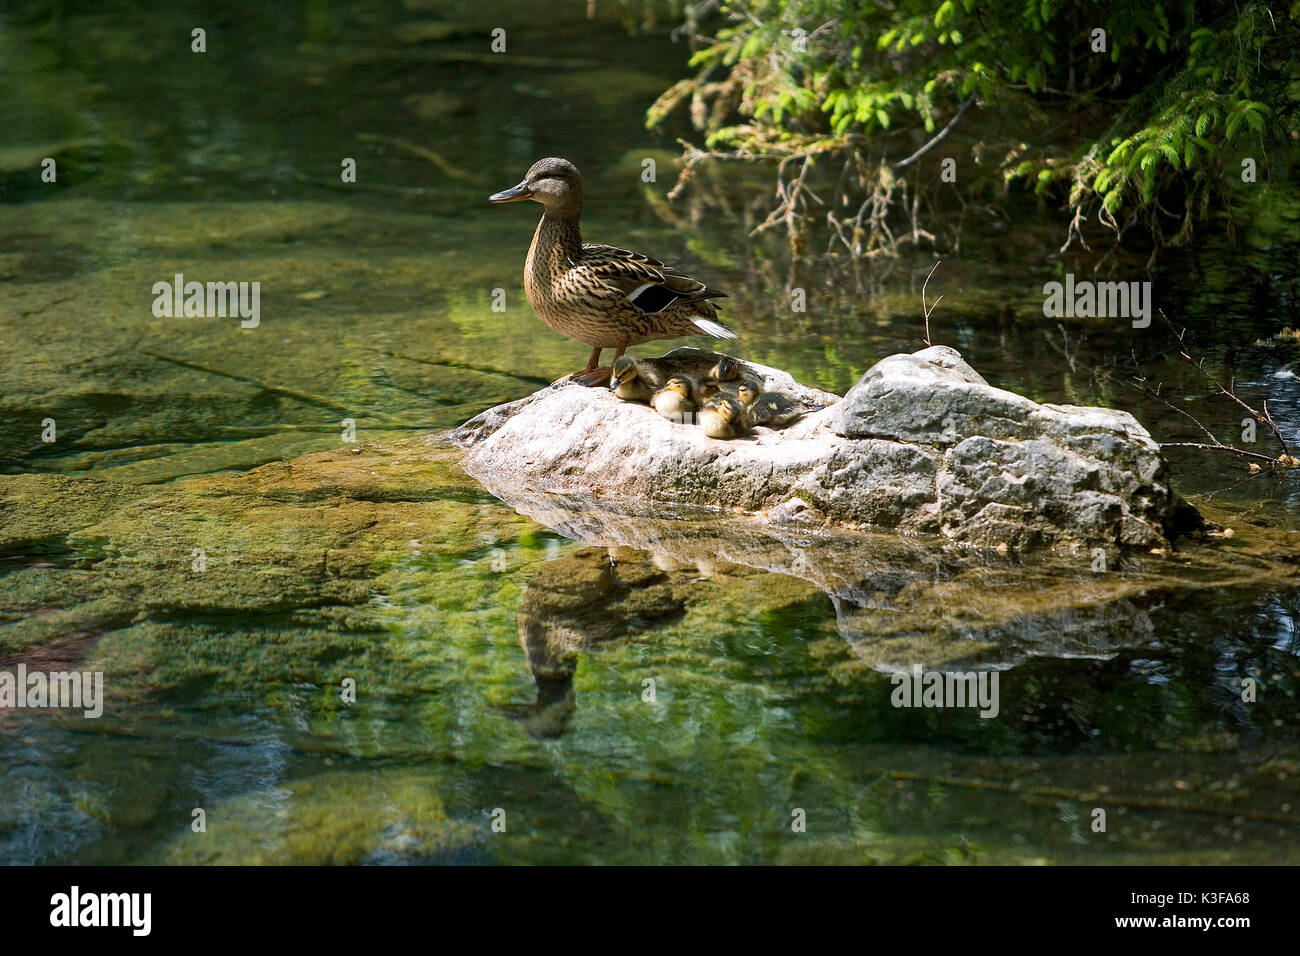 La mère de canard avec les jeunes animaux sur une pierre Banque D'Images